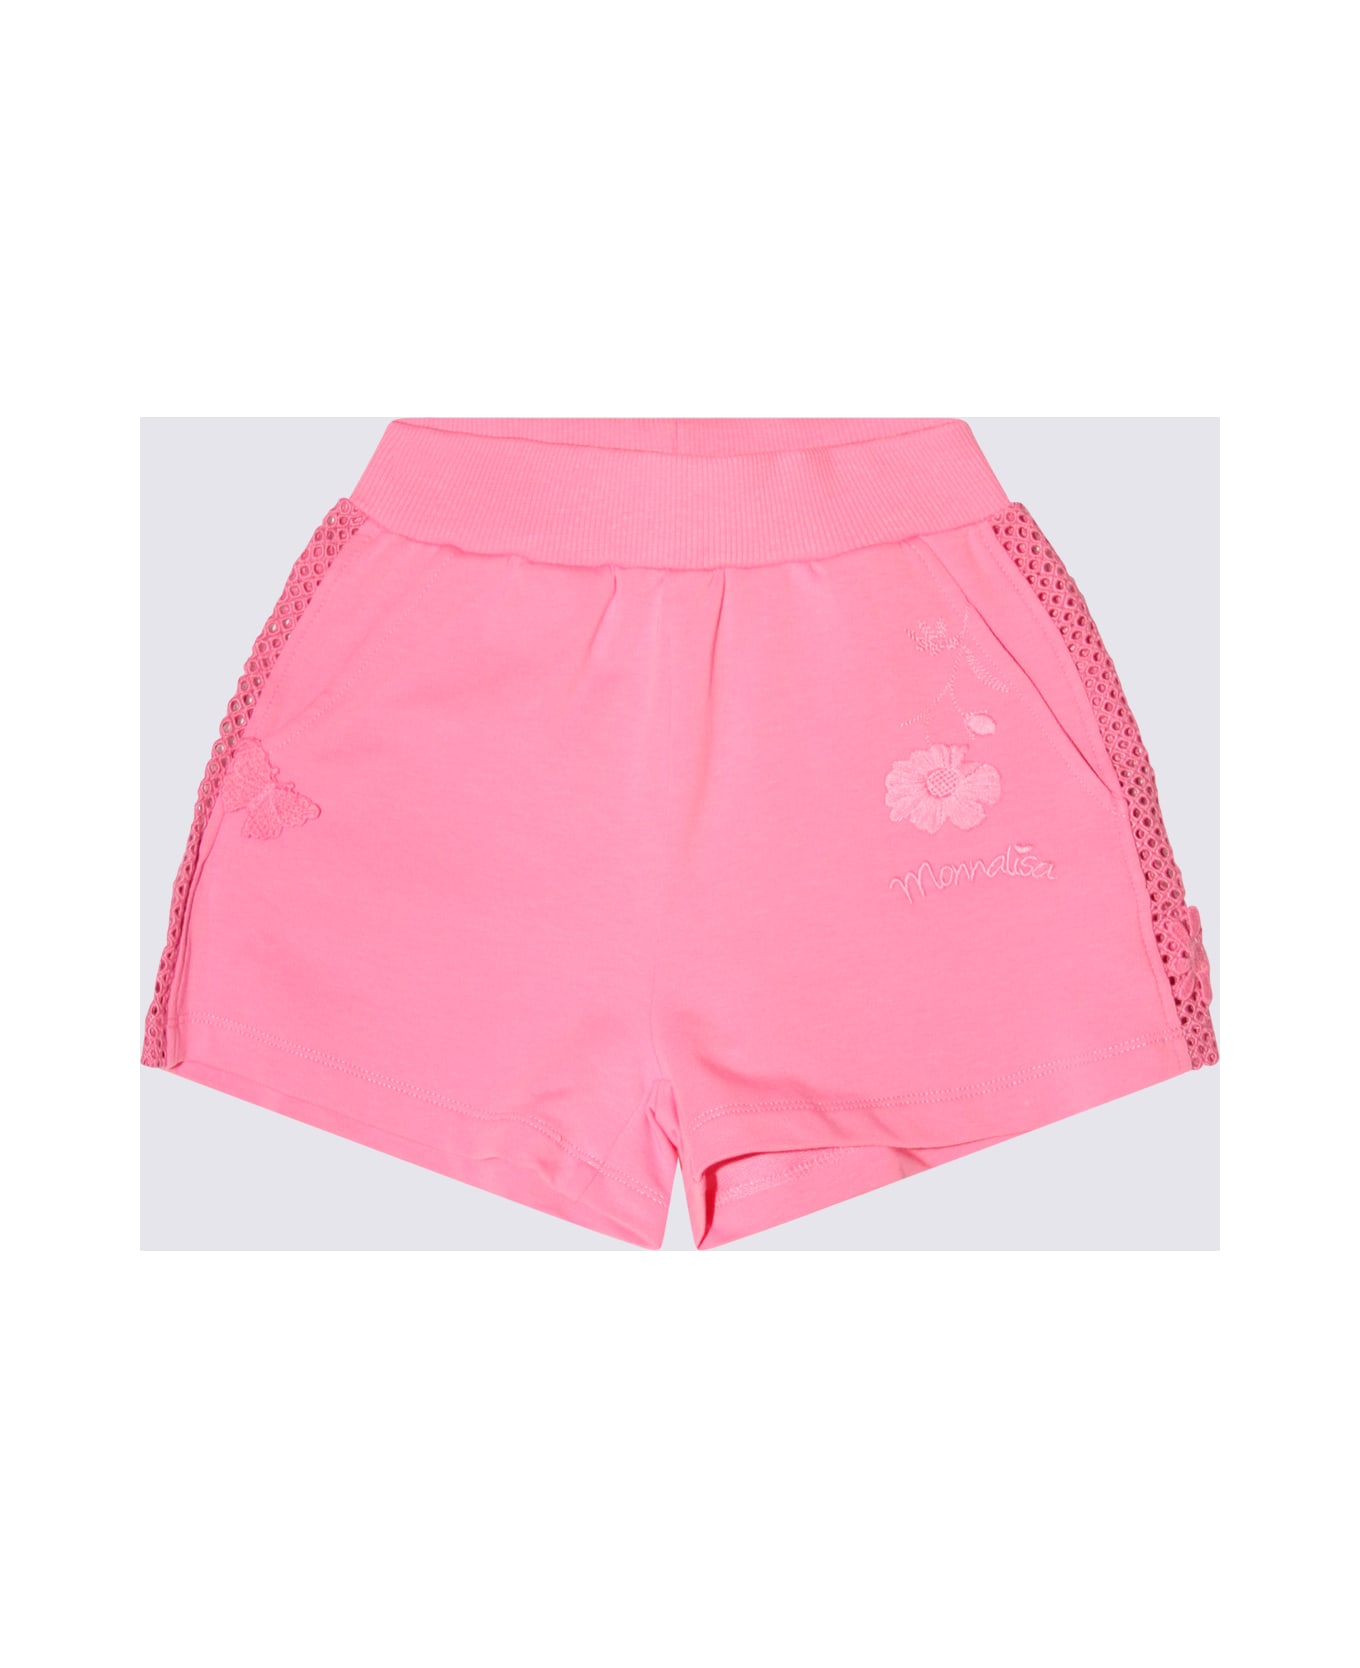 Monnalisa Pink Peach Cotton Shorts - Rosa Peach ボトムス